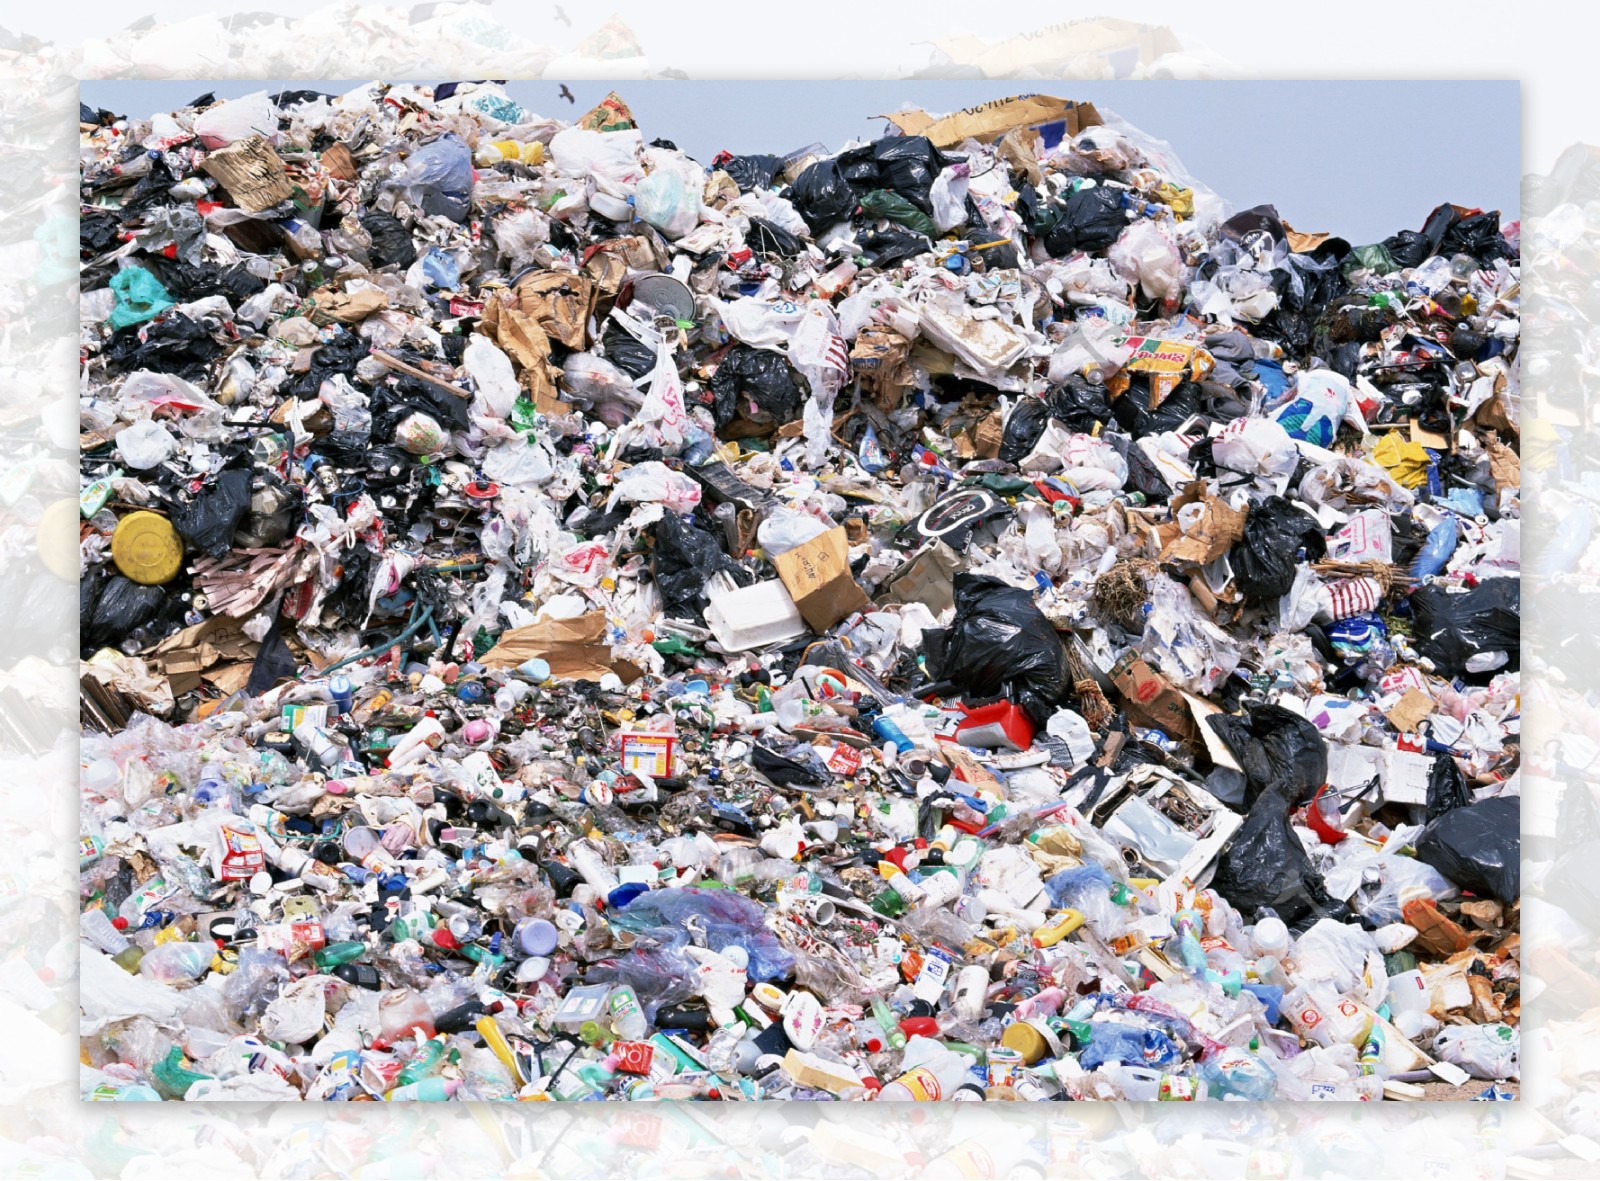 垃圾塑料回收工业污染图片